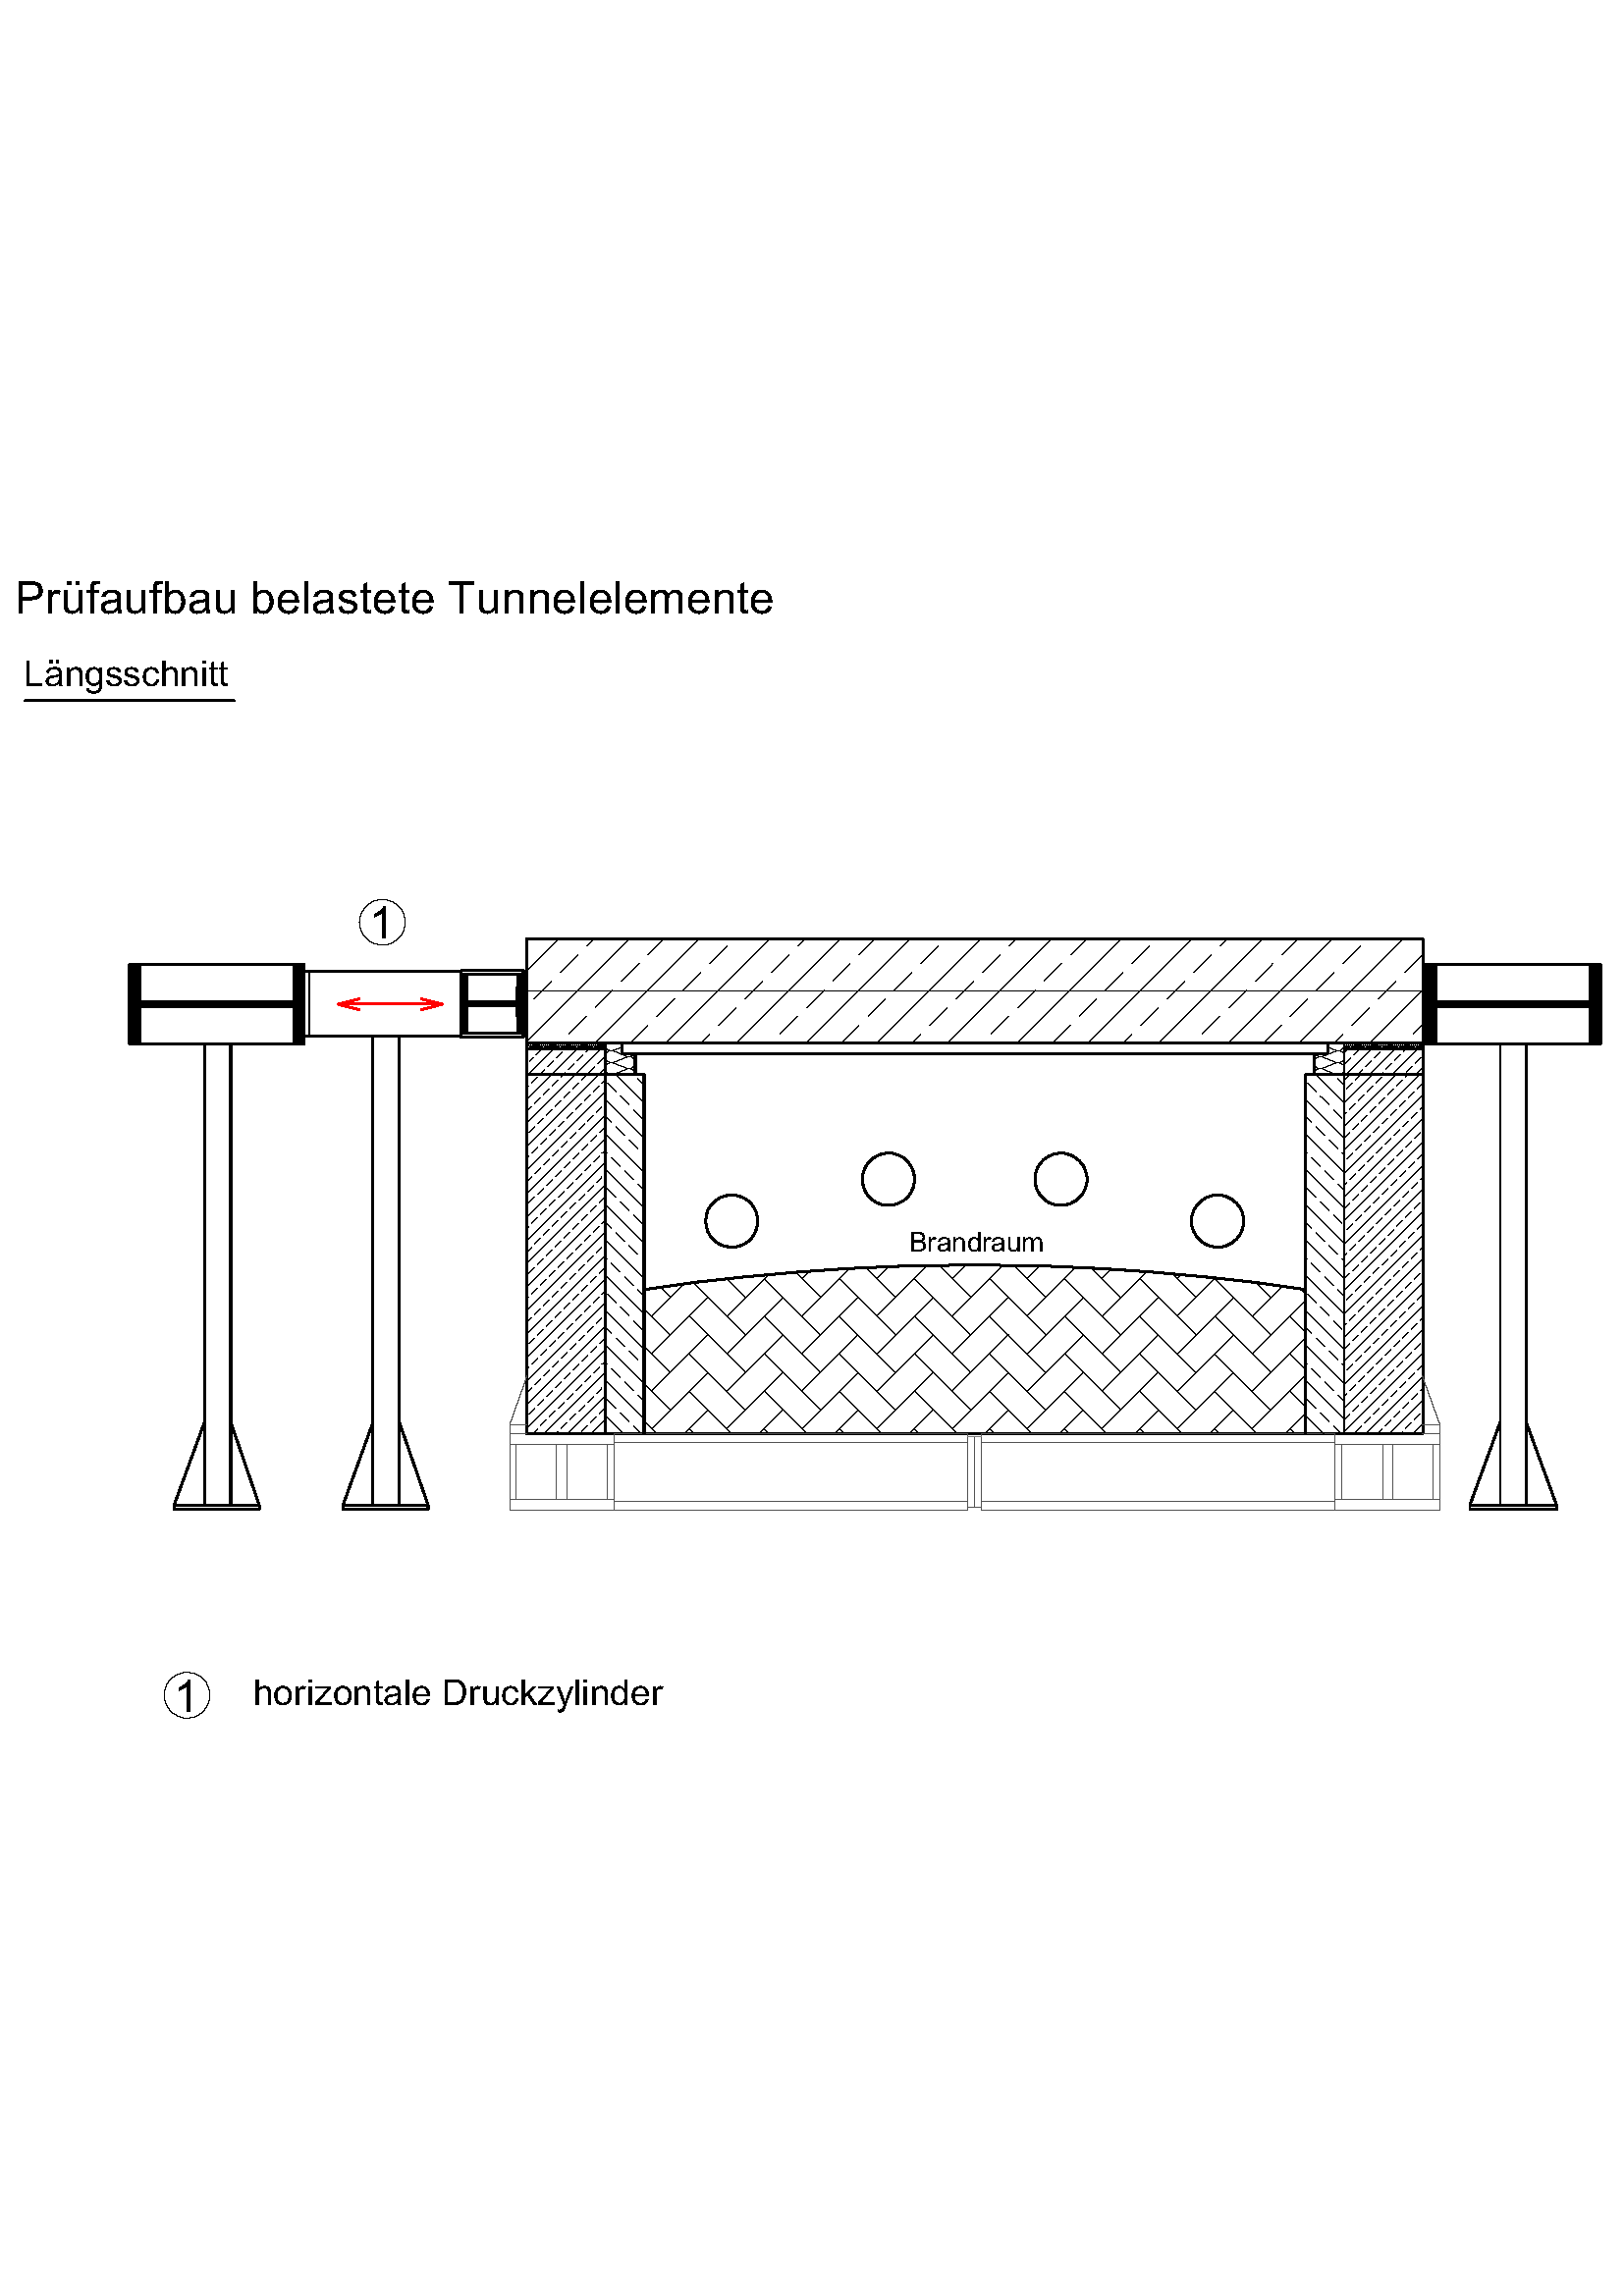 Längsschnitt des Prüfaufbaus belasteter und gebogener Tunnelelement zum Einbau im Prüfofen mit horizontaler Belastung